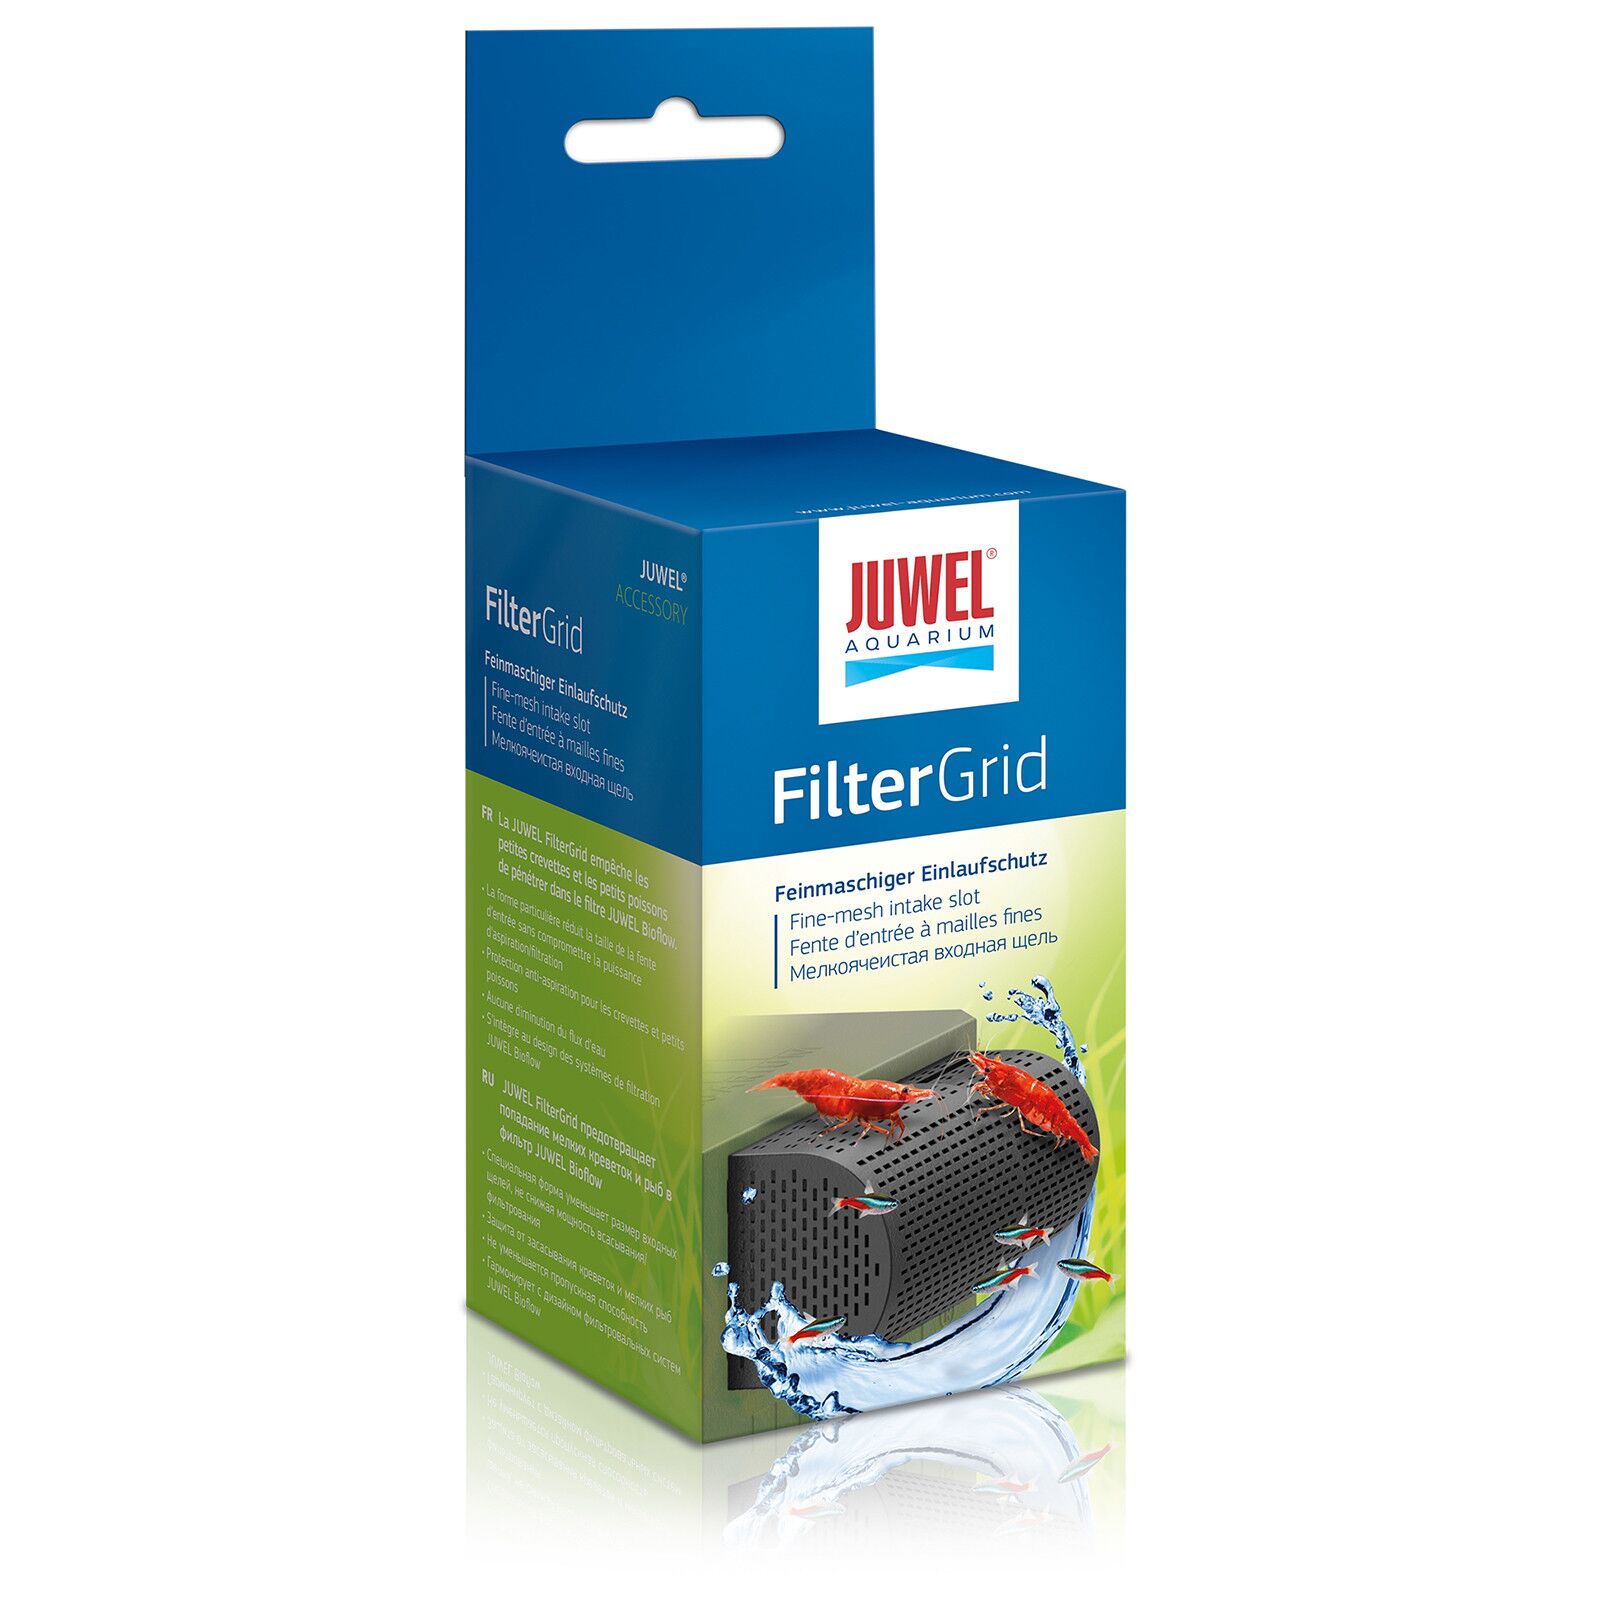 Juwel - FilterGrid | Shop